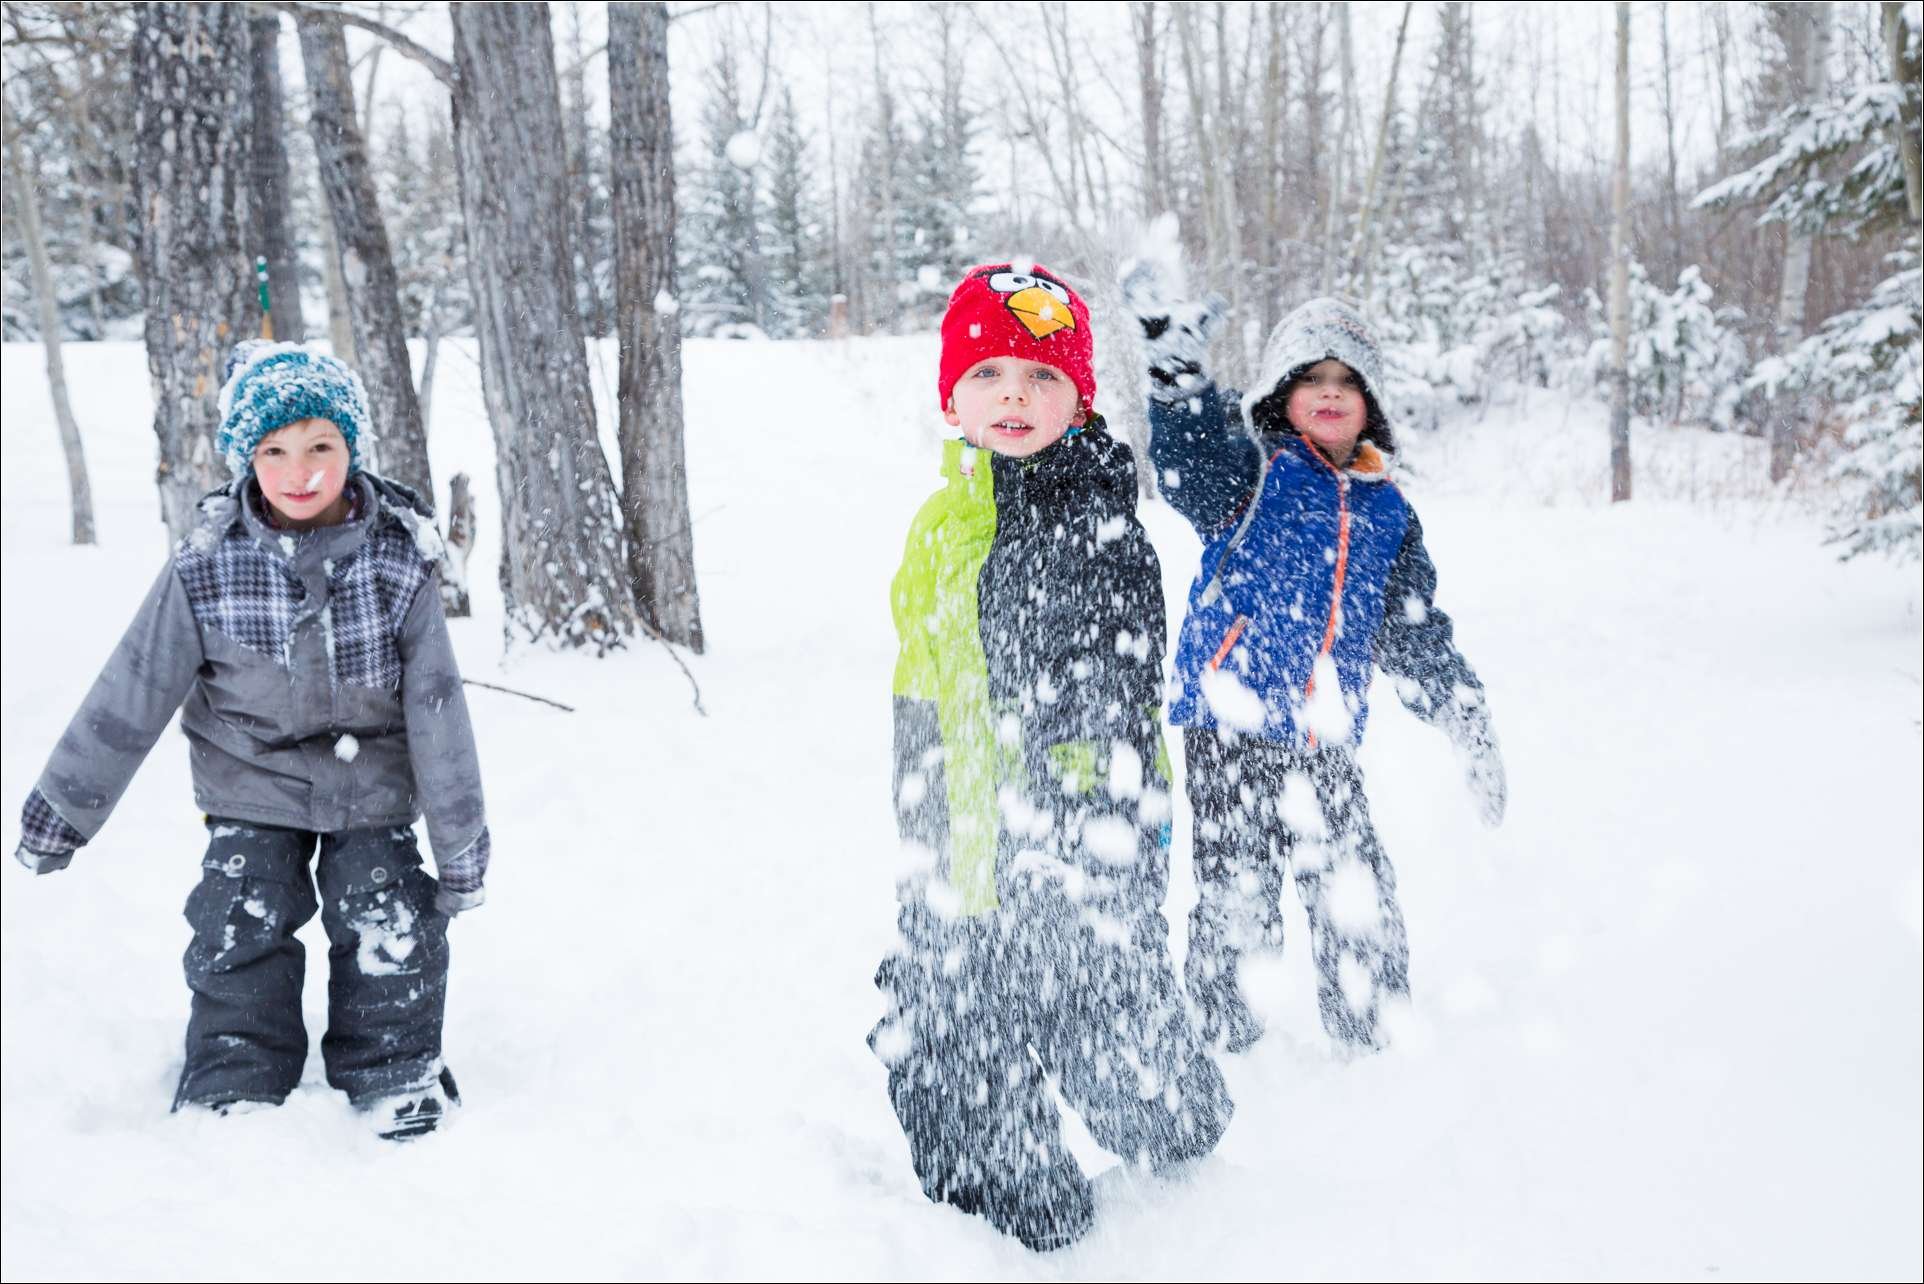 Играть в снежки кататься. Дети на улице зимой. Зимние игры на улице. Дети зима улица. Дети в снегу.